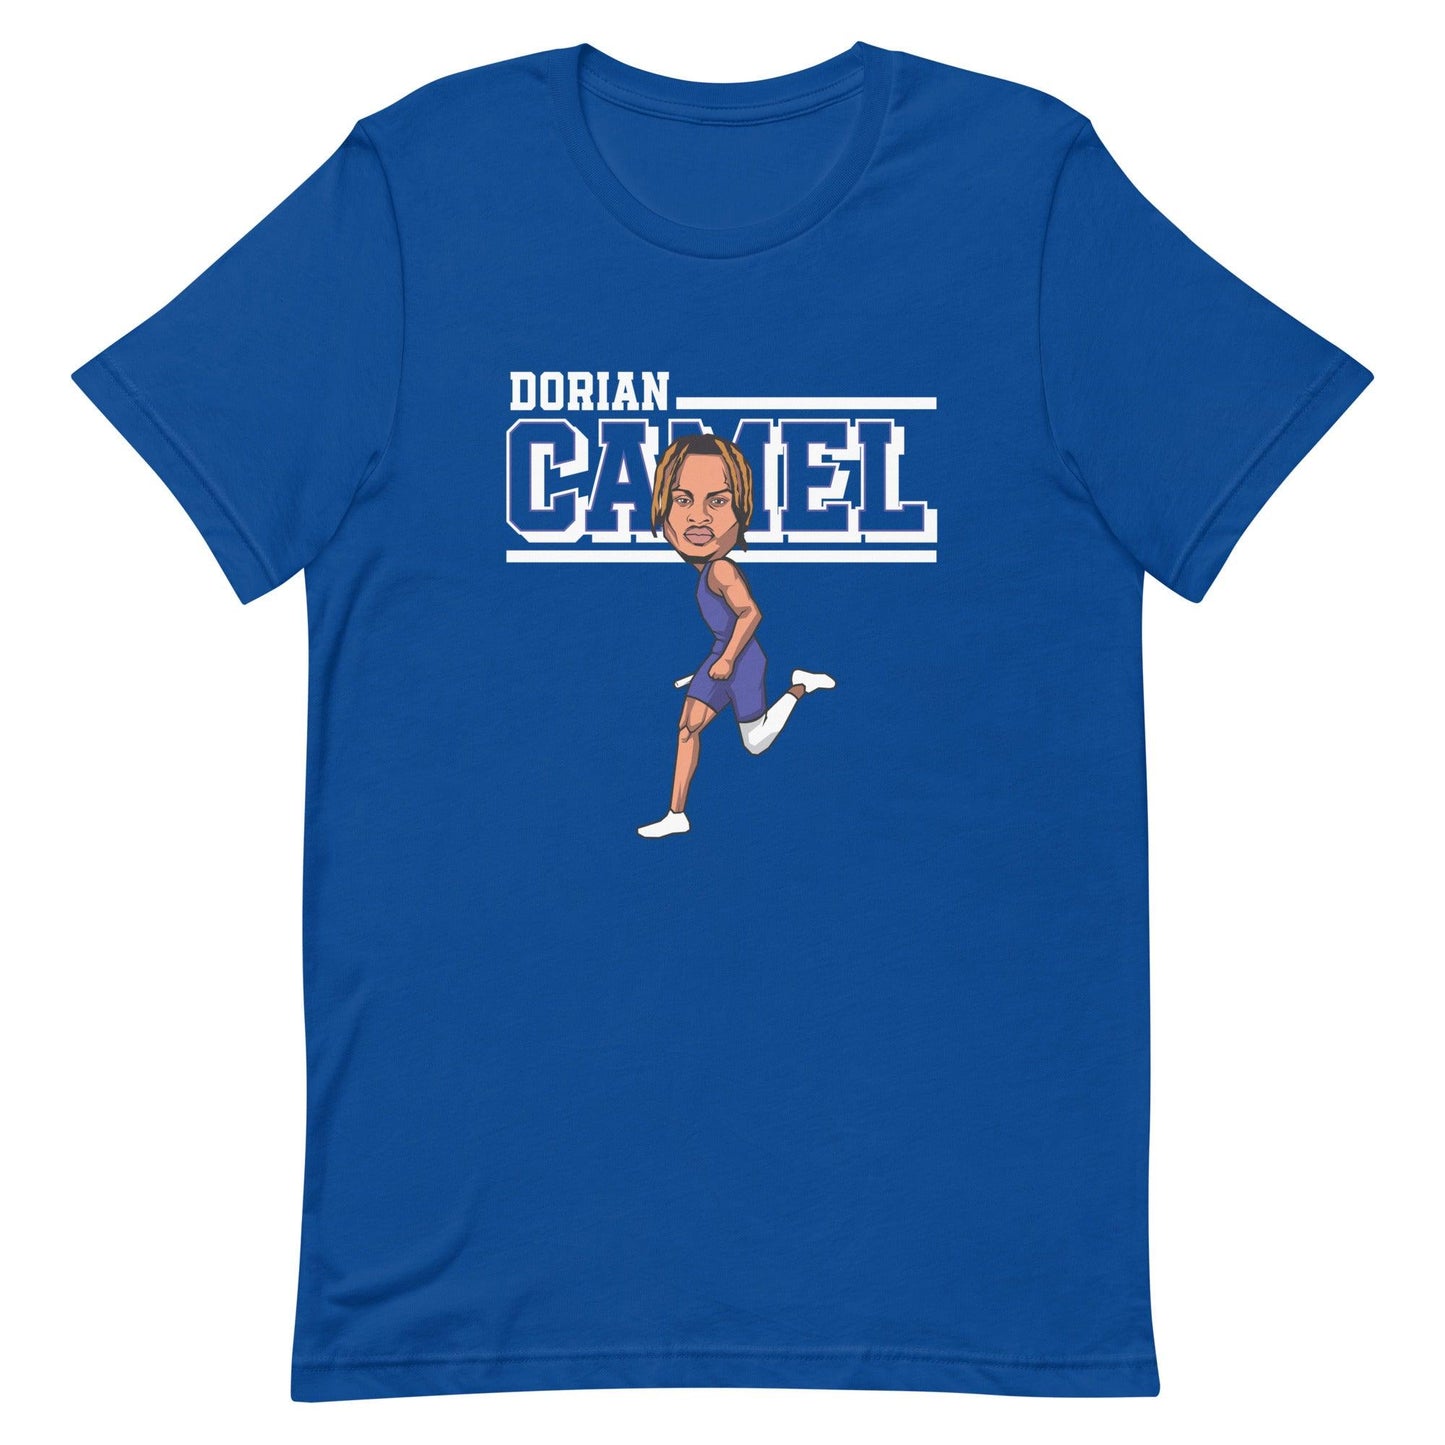 Dorian Camel "Cartoon" t-shirt - Fan Arch